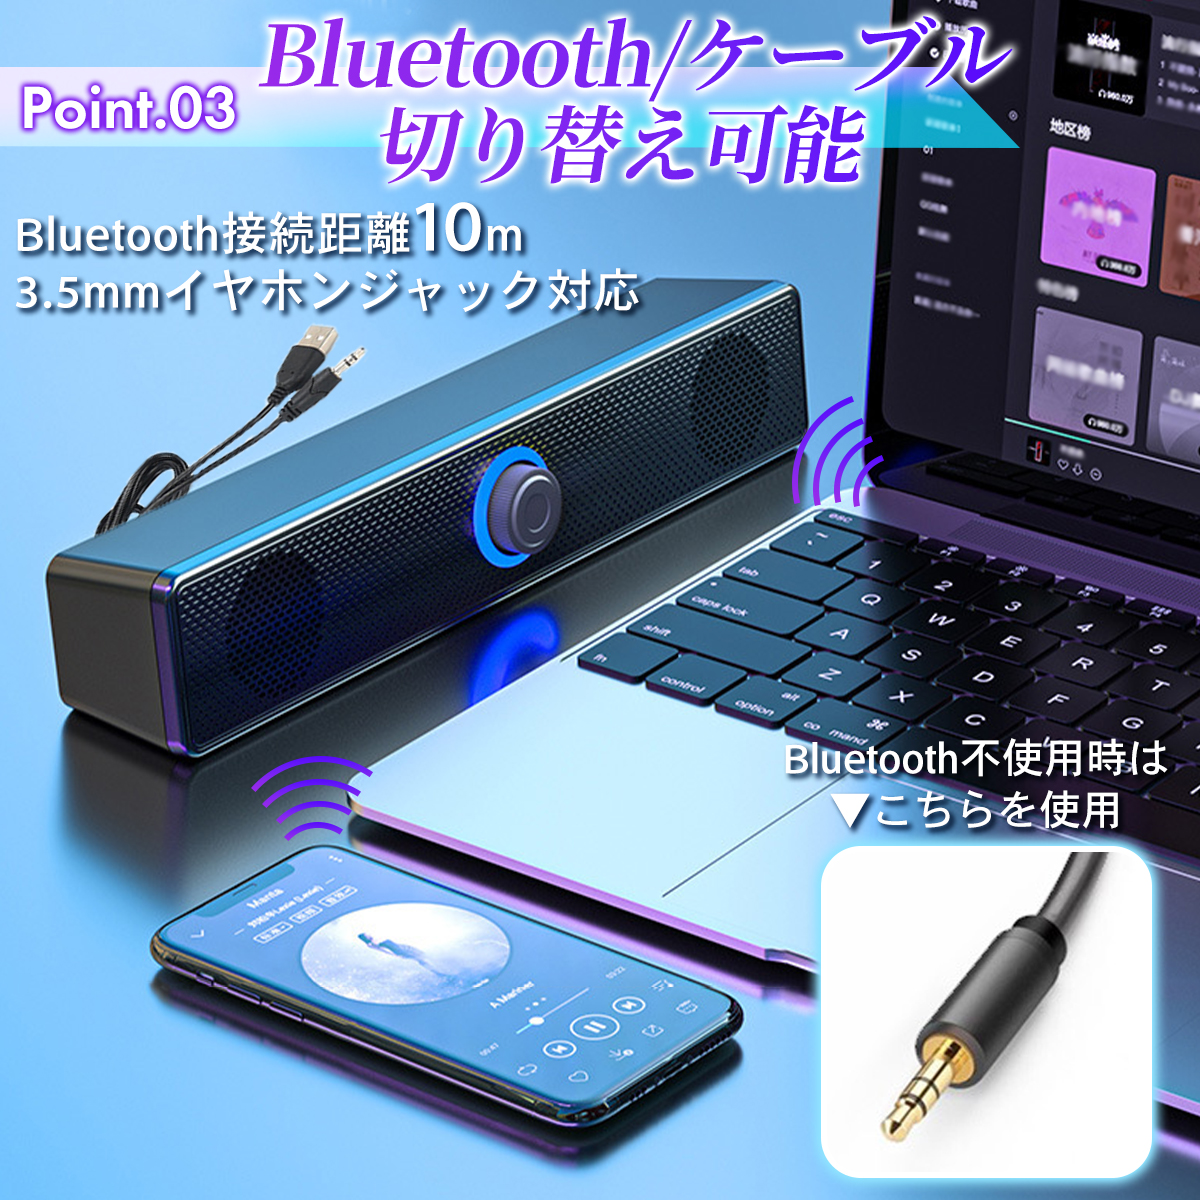  динамик Bluetooth usb высококачественный звук PC динамик звук балка Bluetooth динамик смартфон планшет персональный компьютер смартфон соответствует 